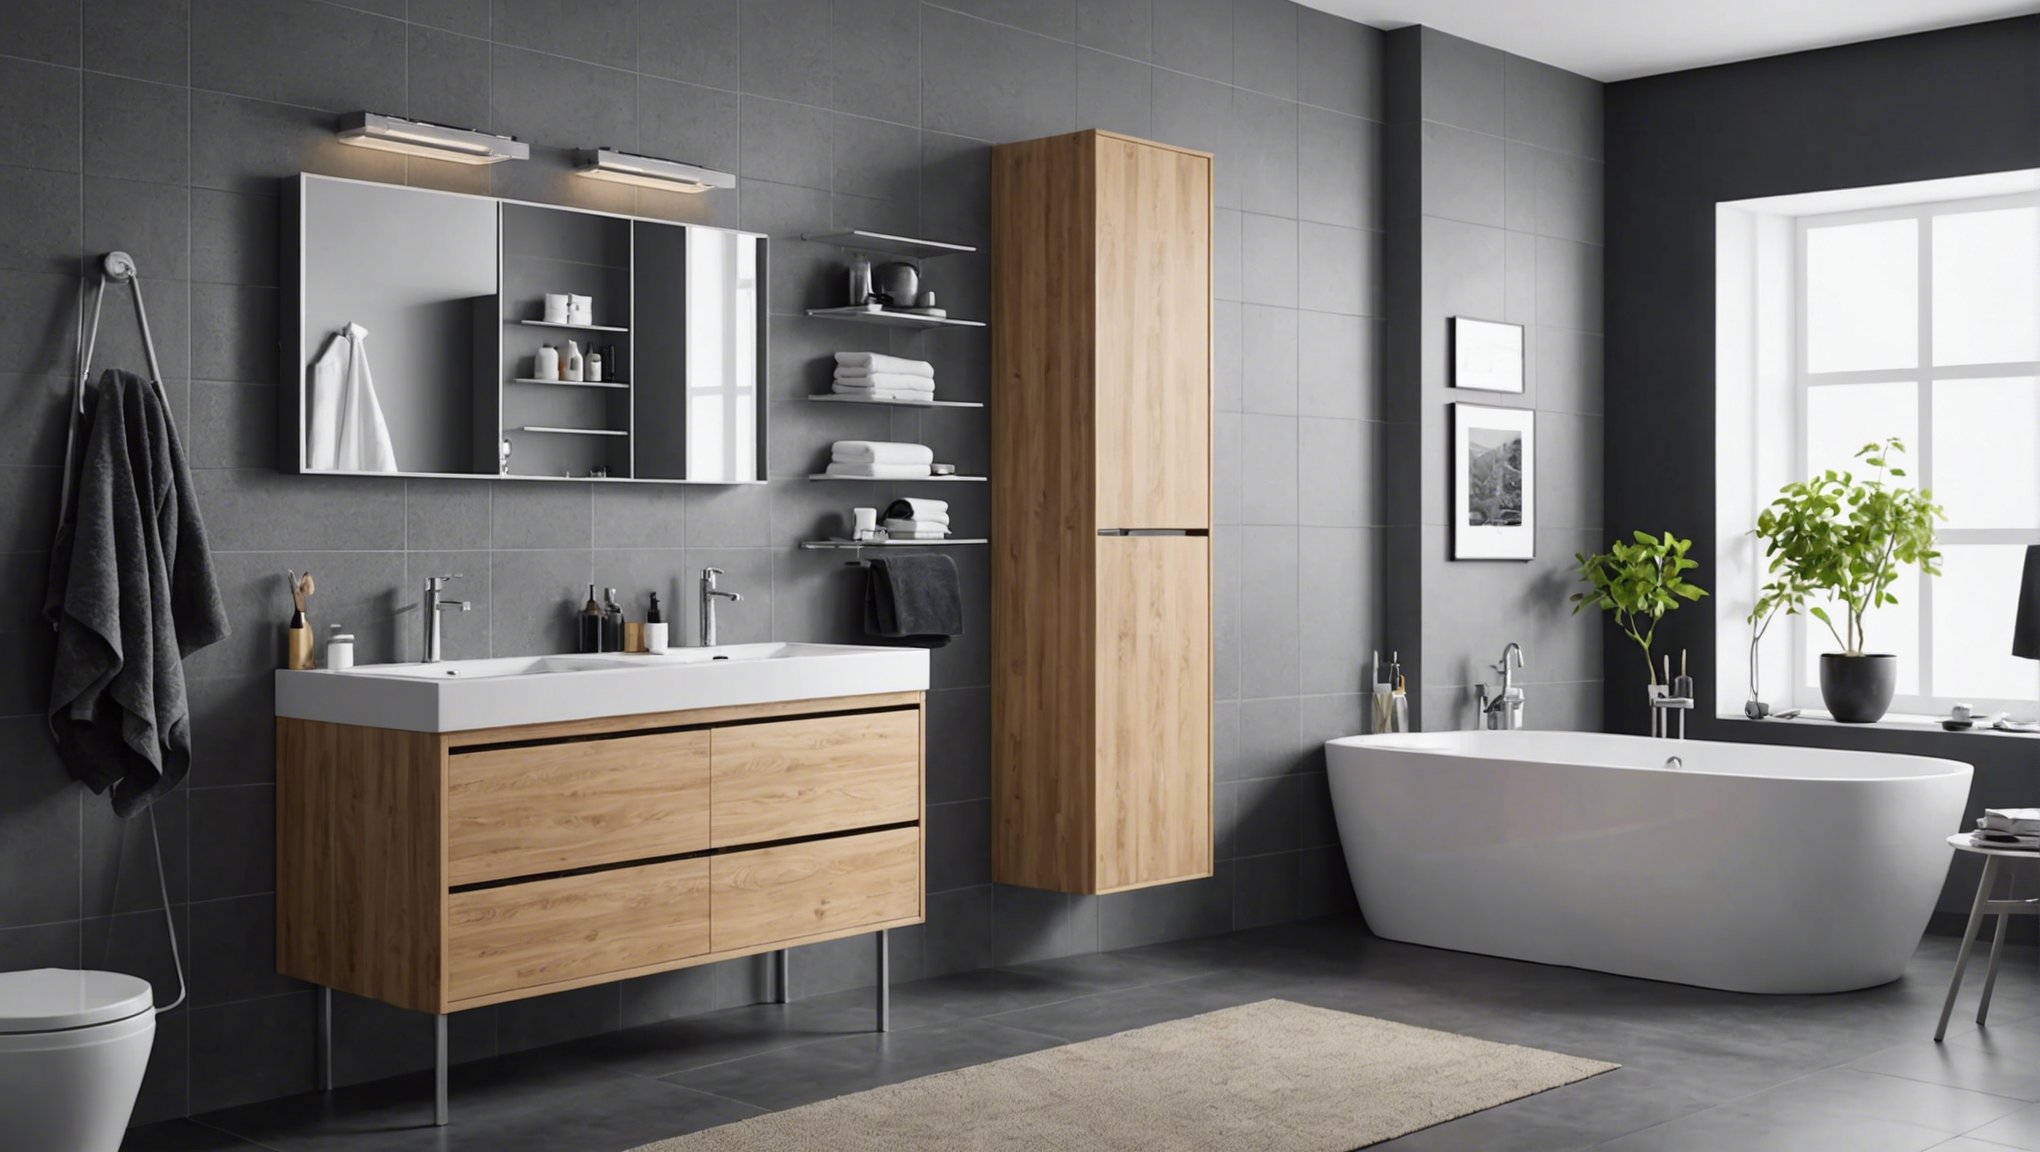 découvrez nos conseils pour choisir le meilleur meuble de salle de bain chez ikea et transformer votre espace en un havre de détente et de praticité.